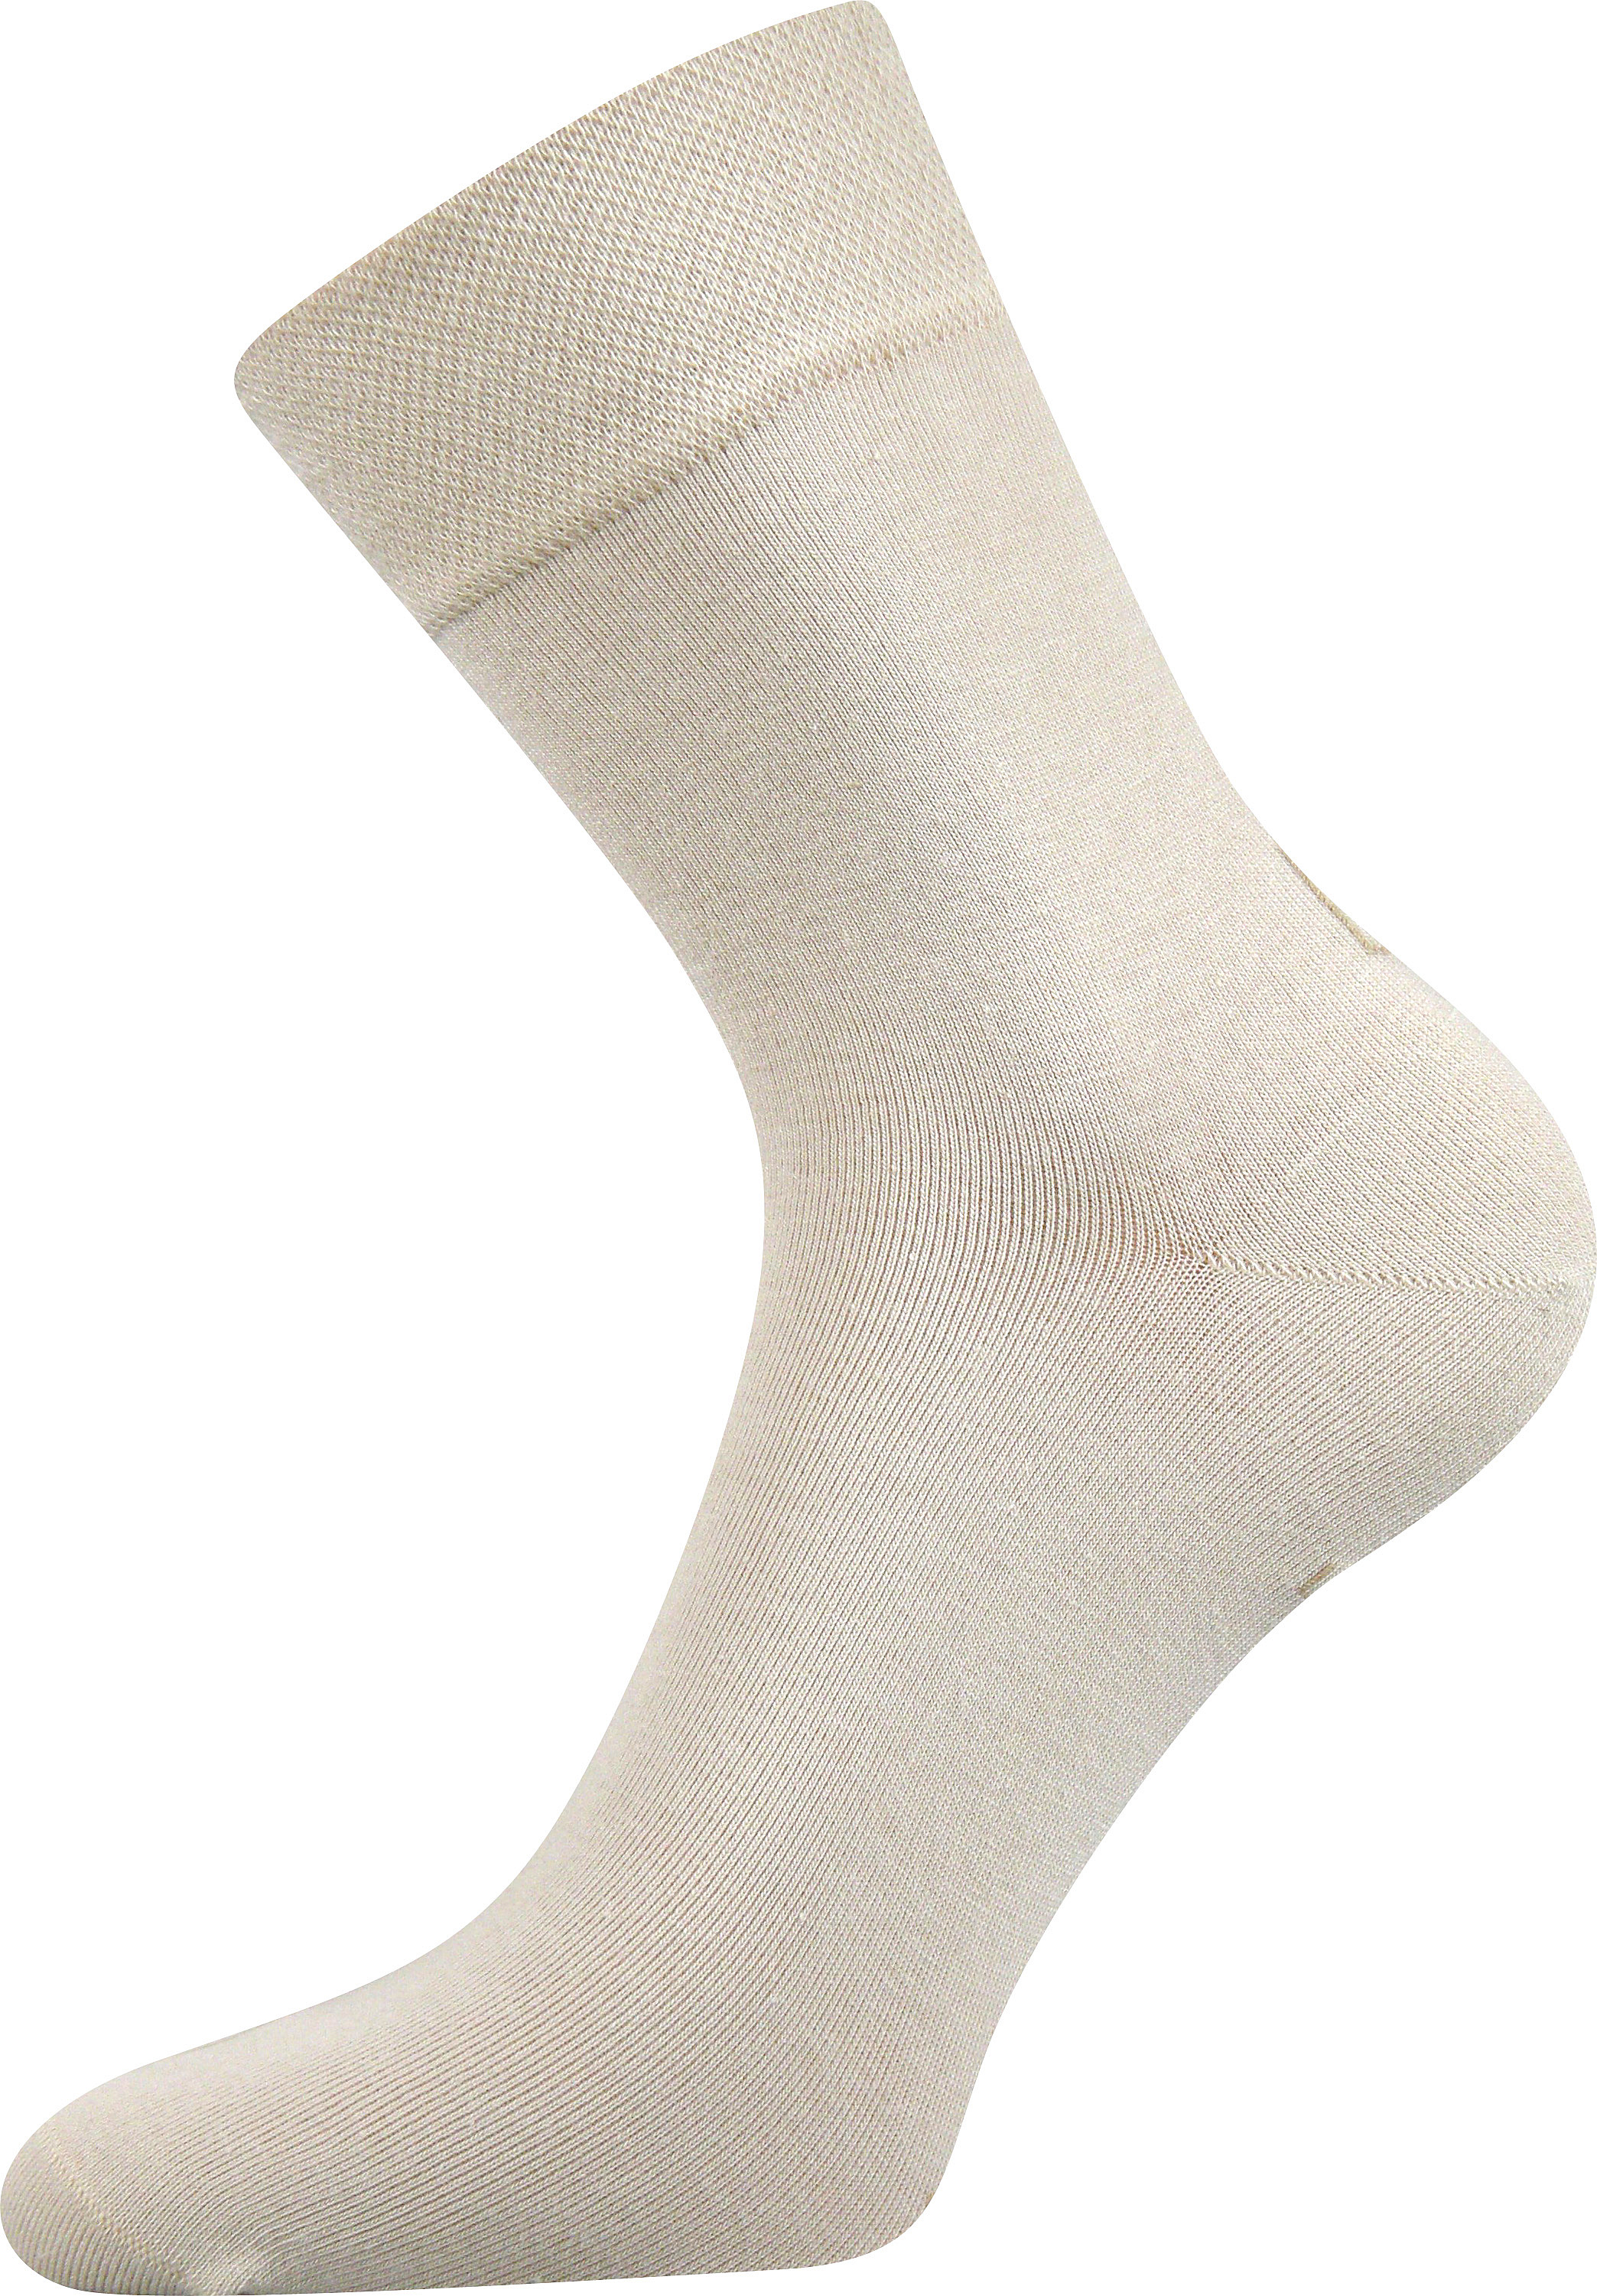 Ponožky společenské Lonka Haner - béžové, 43-46